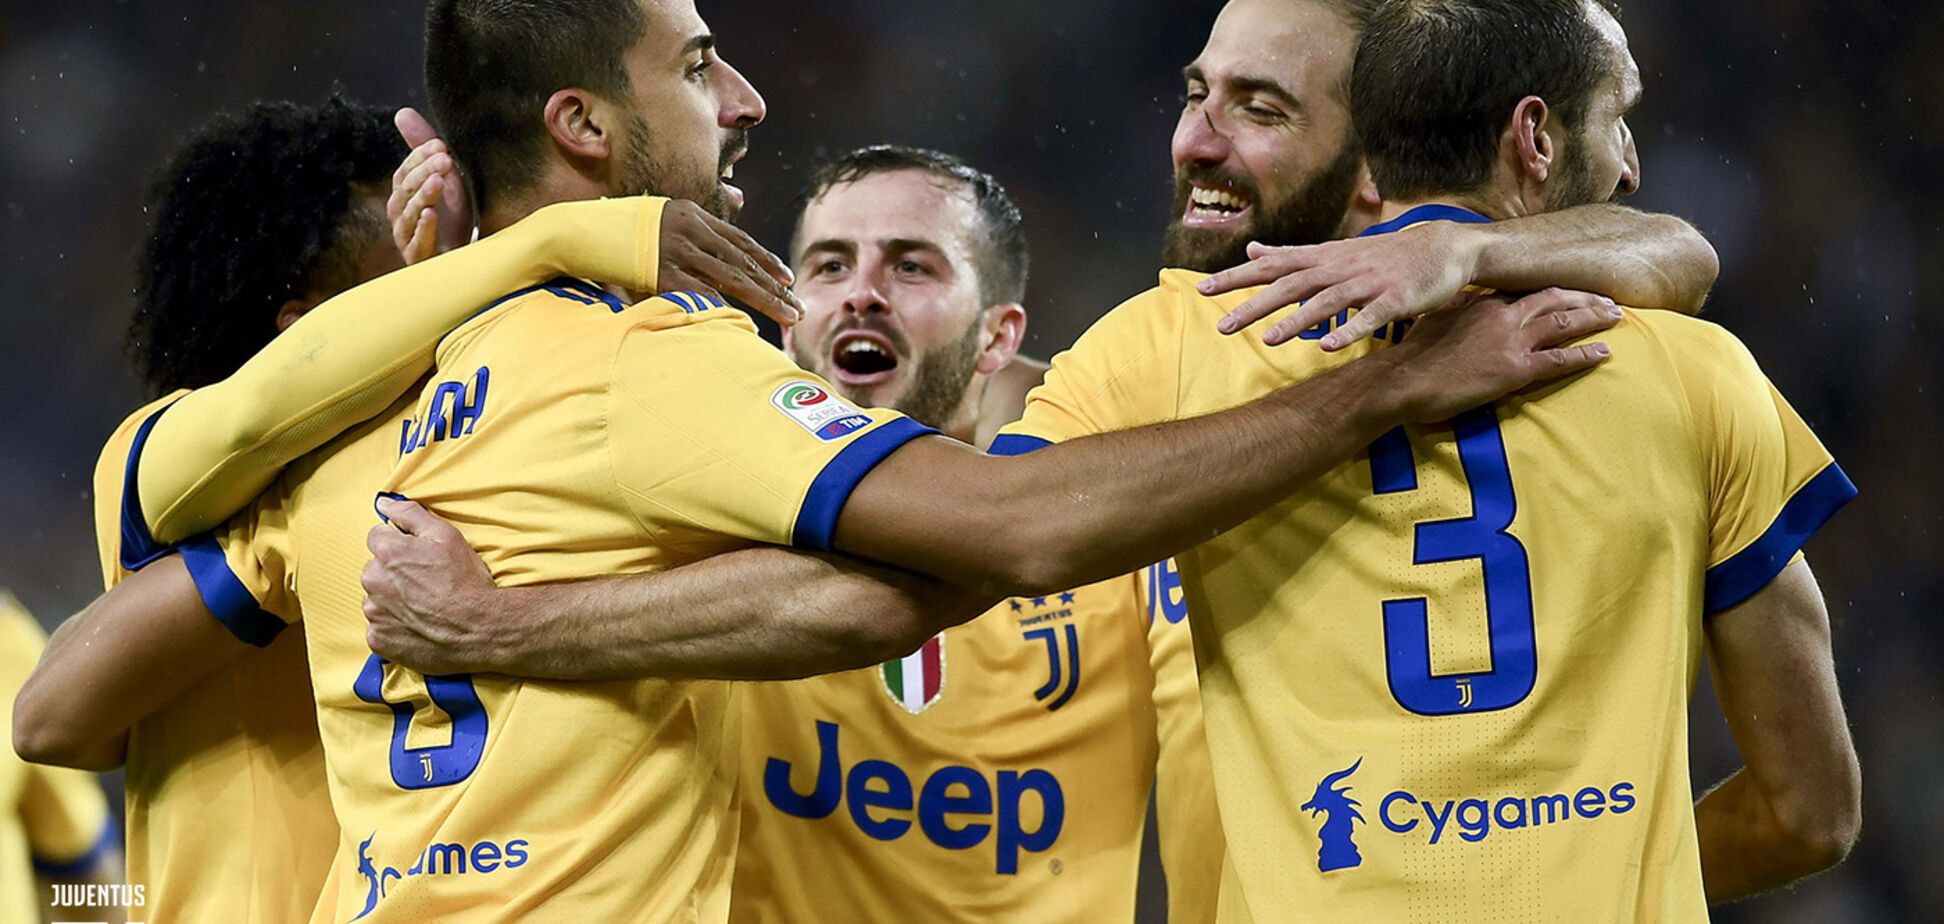 Феноменально! Чемпіон Італії здобув перемогу у меншості, забивши 6 м'ячів: опубліковано відео